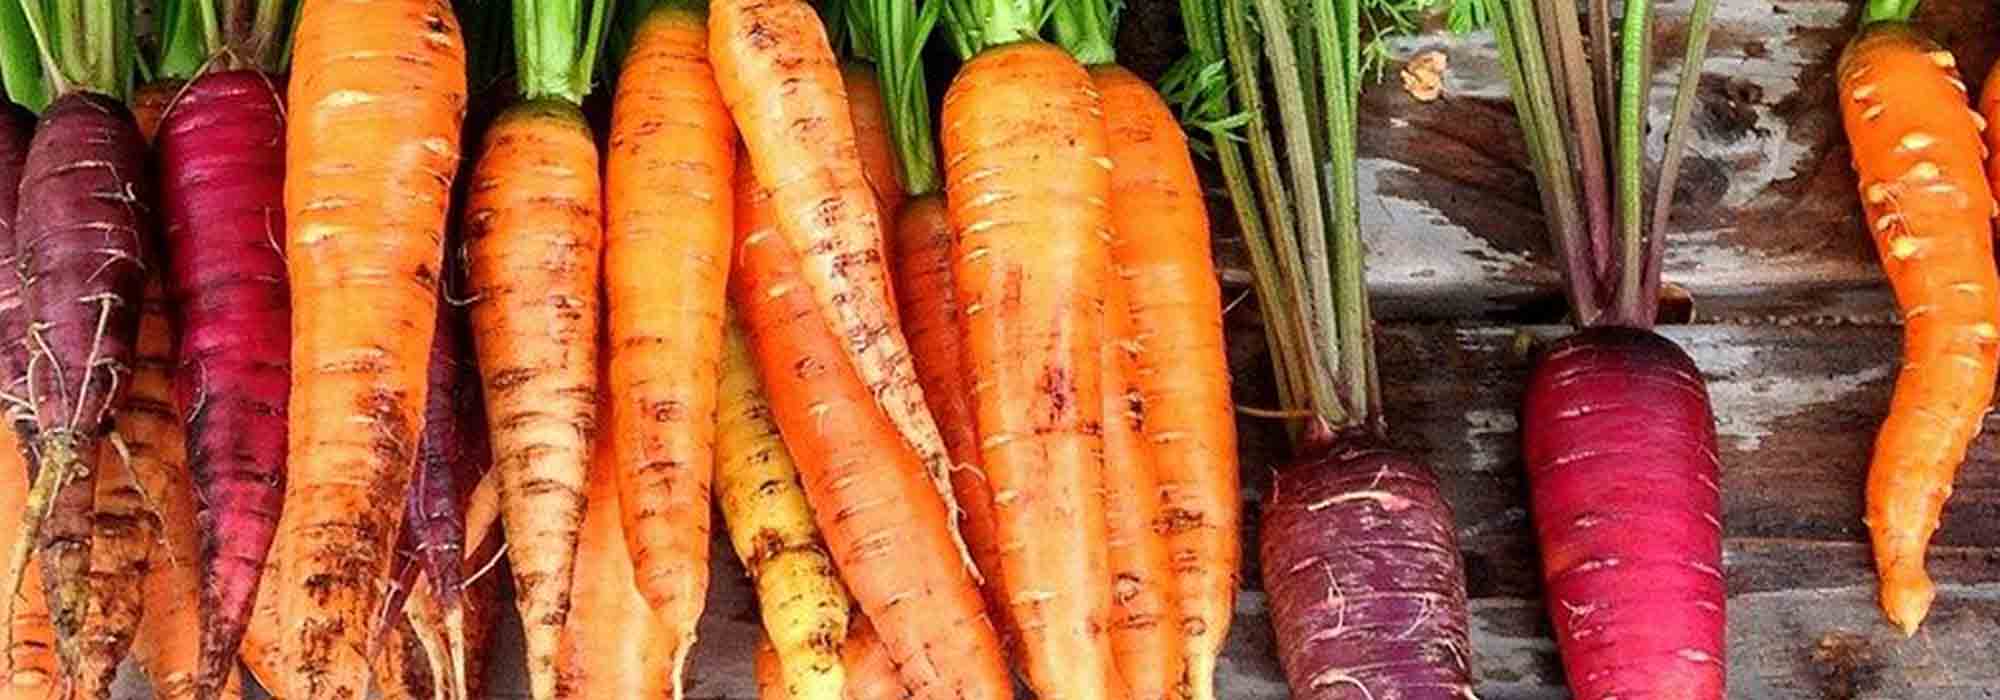 Bien choisir ses carottes : guide d’achat